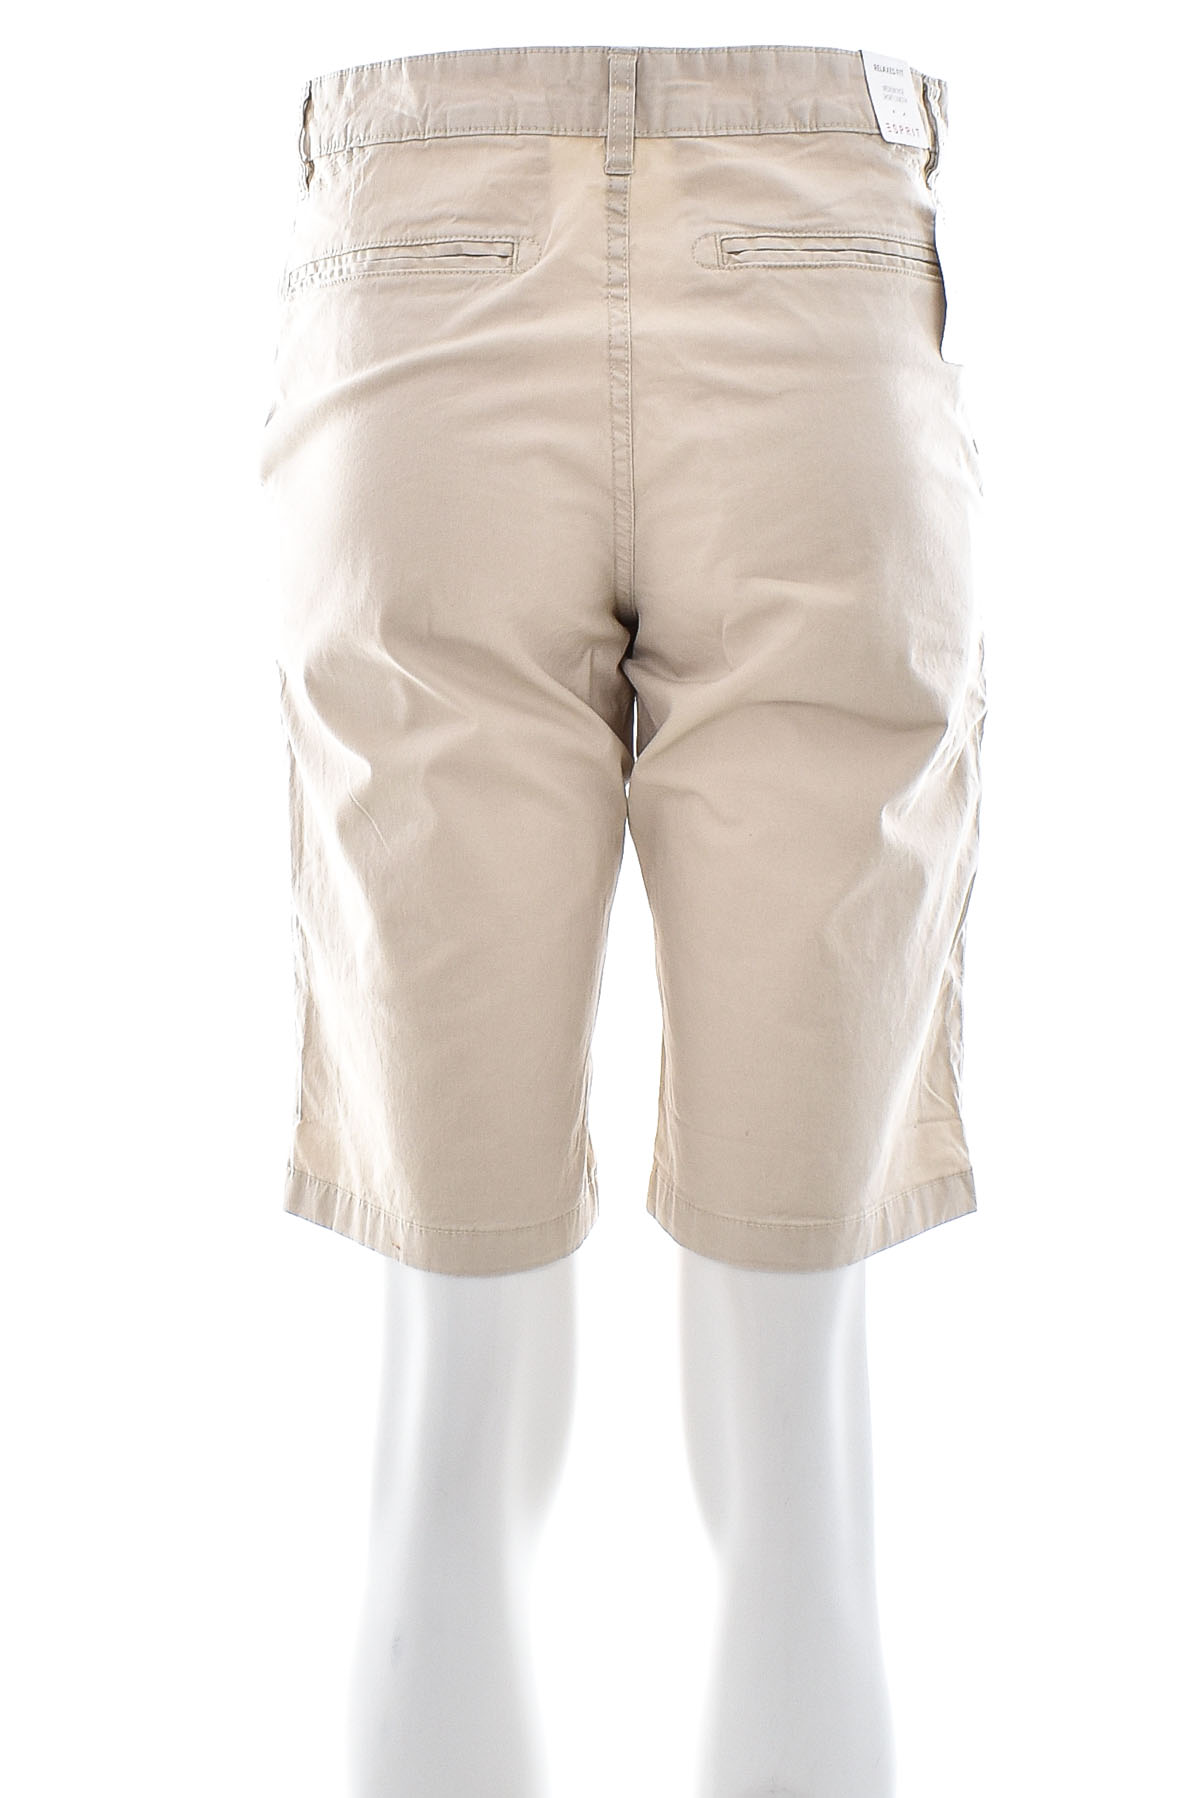 Men's shorts - ESPRIT - 1